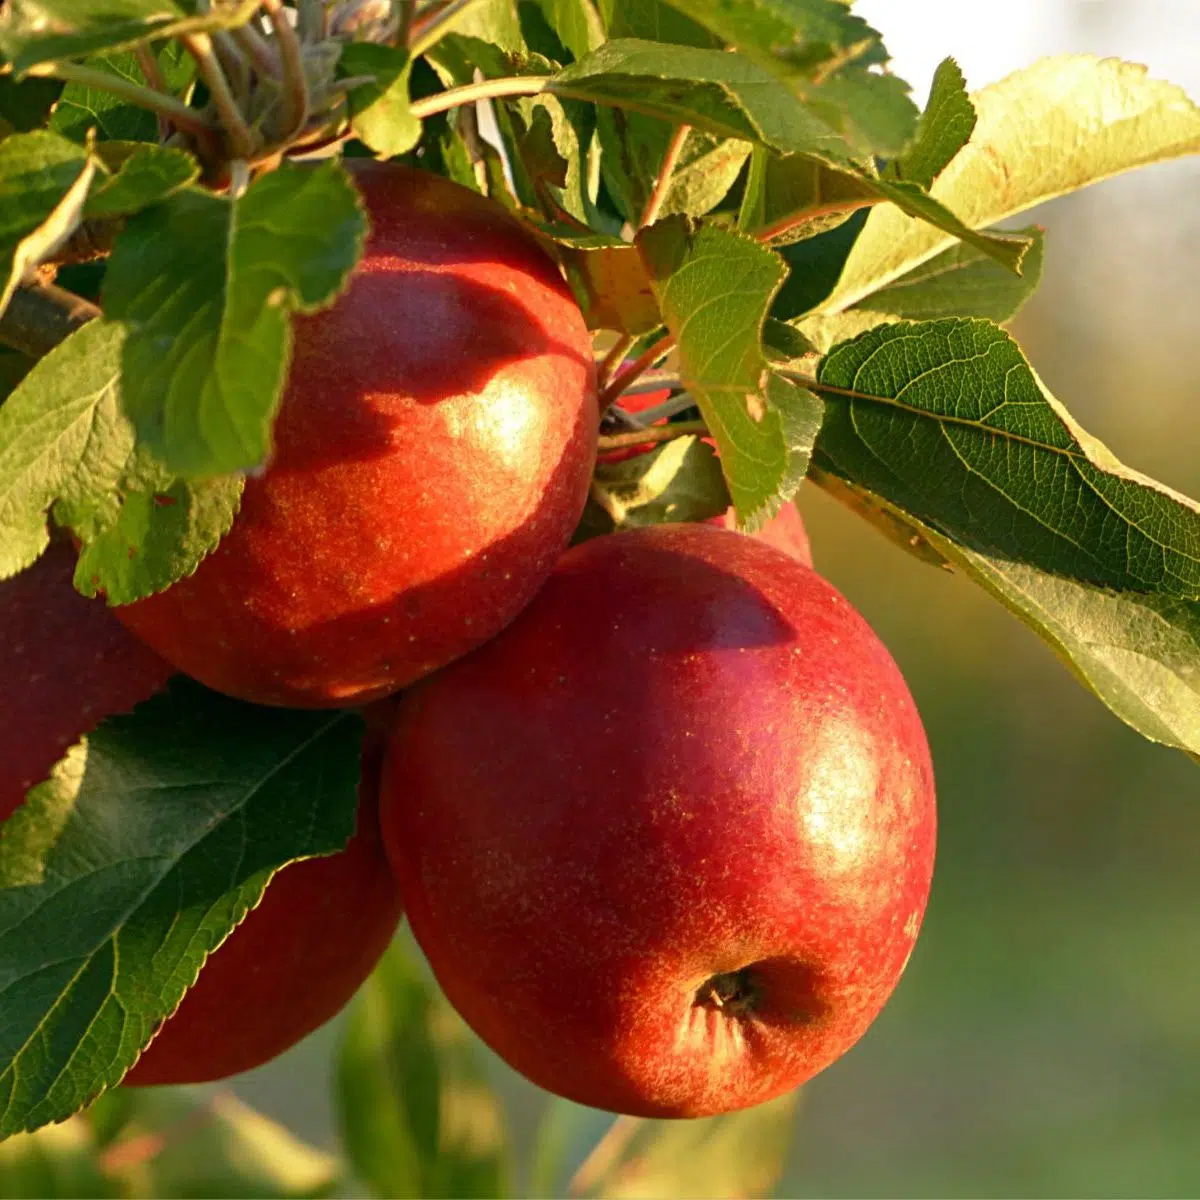 Las mejores manzanas para hornear pasteles de manzana con manzanas frescas en el árbol a la luz del sol.